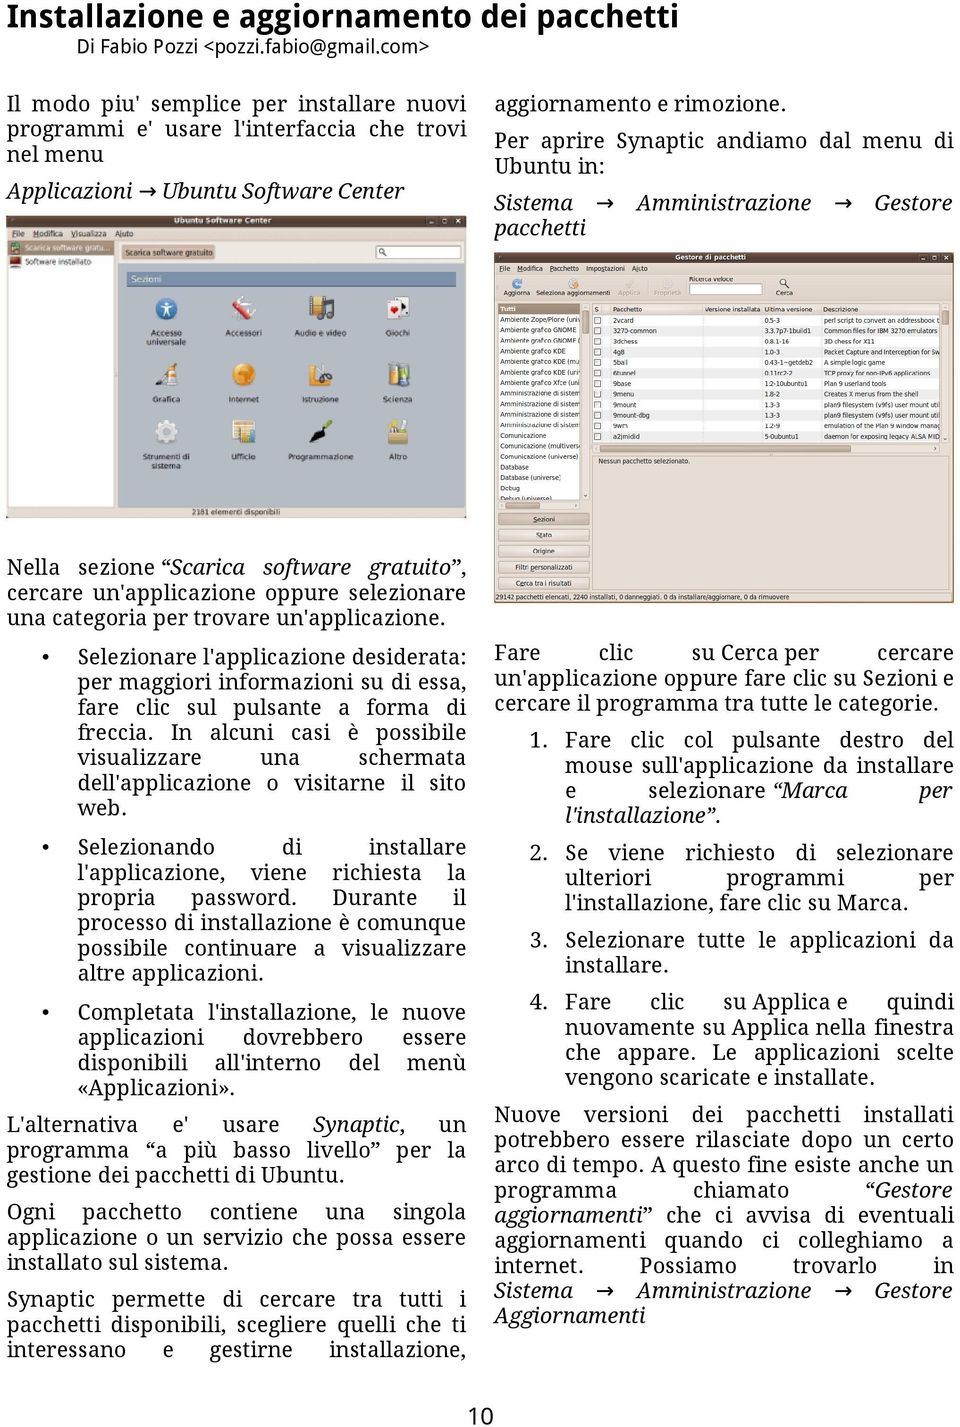 Per aprire Synaptic andiamo dal menu di Ubuntu in: Applicazioni Ubuntu Software Center Sistema pacchetti Amministrazione Gestore Nella sezione Scarica software gratuito, cercare un'applicazione